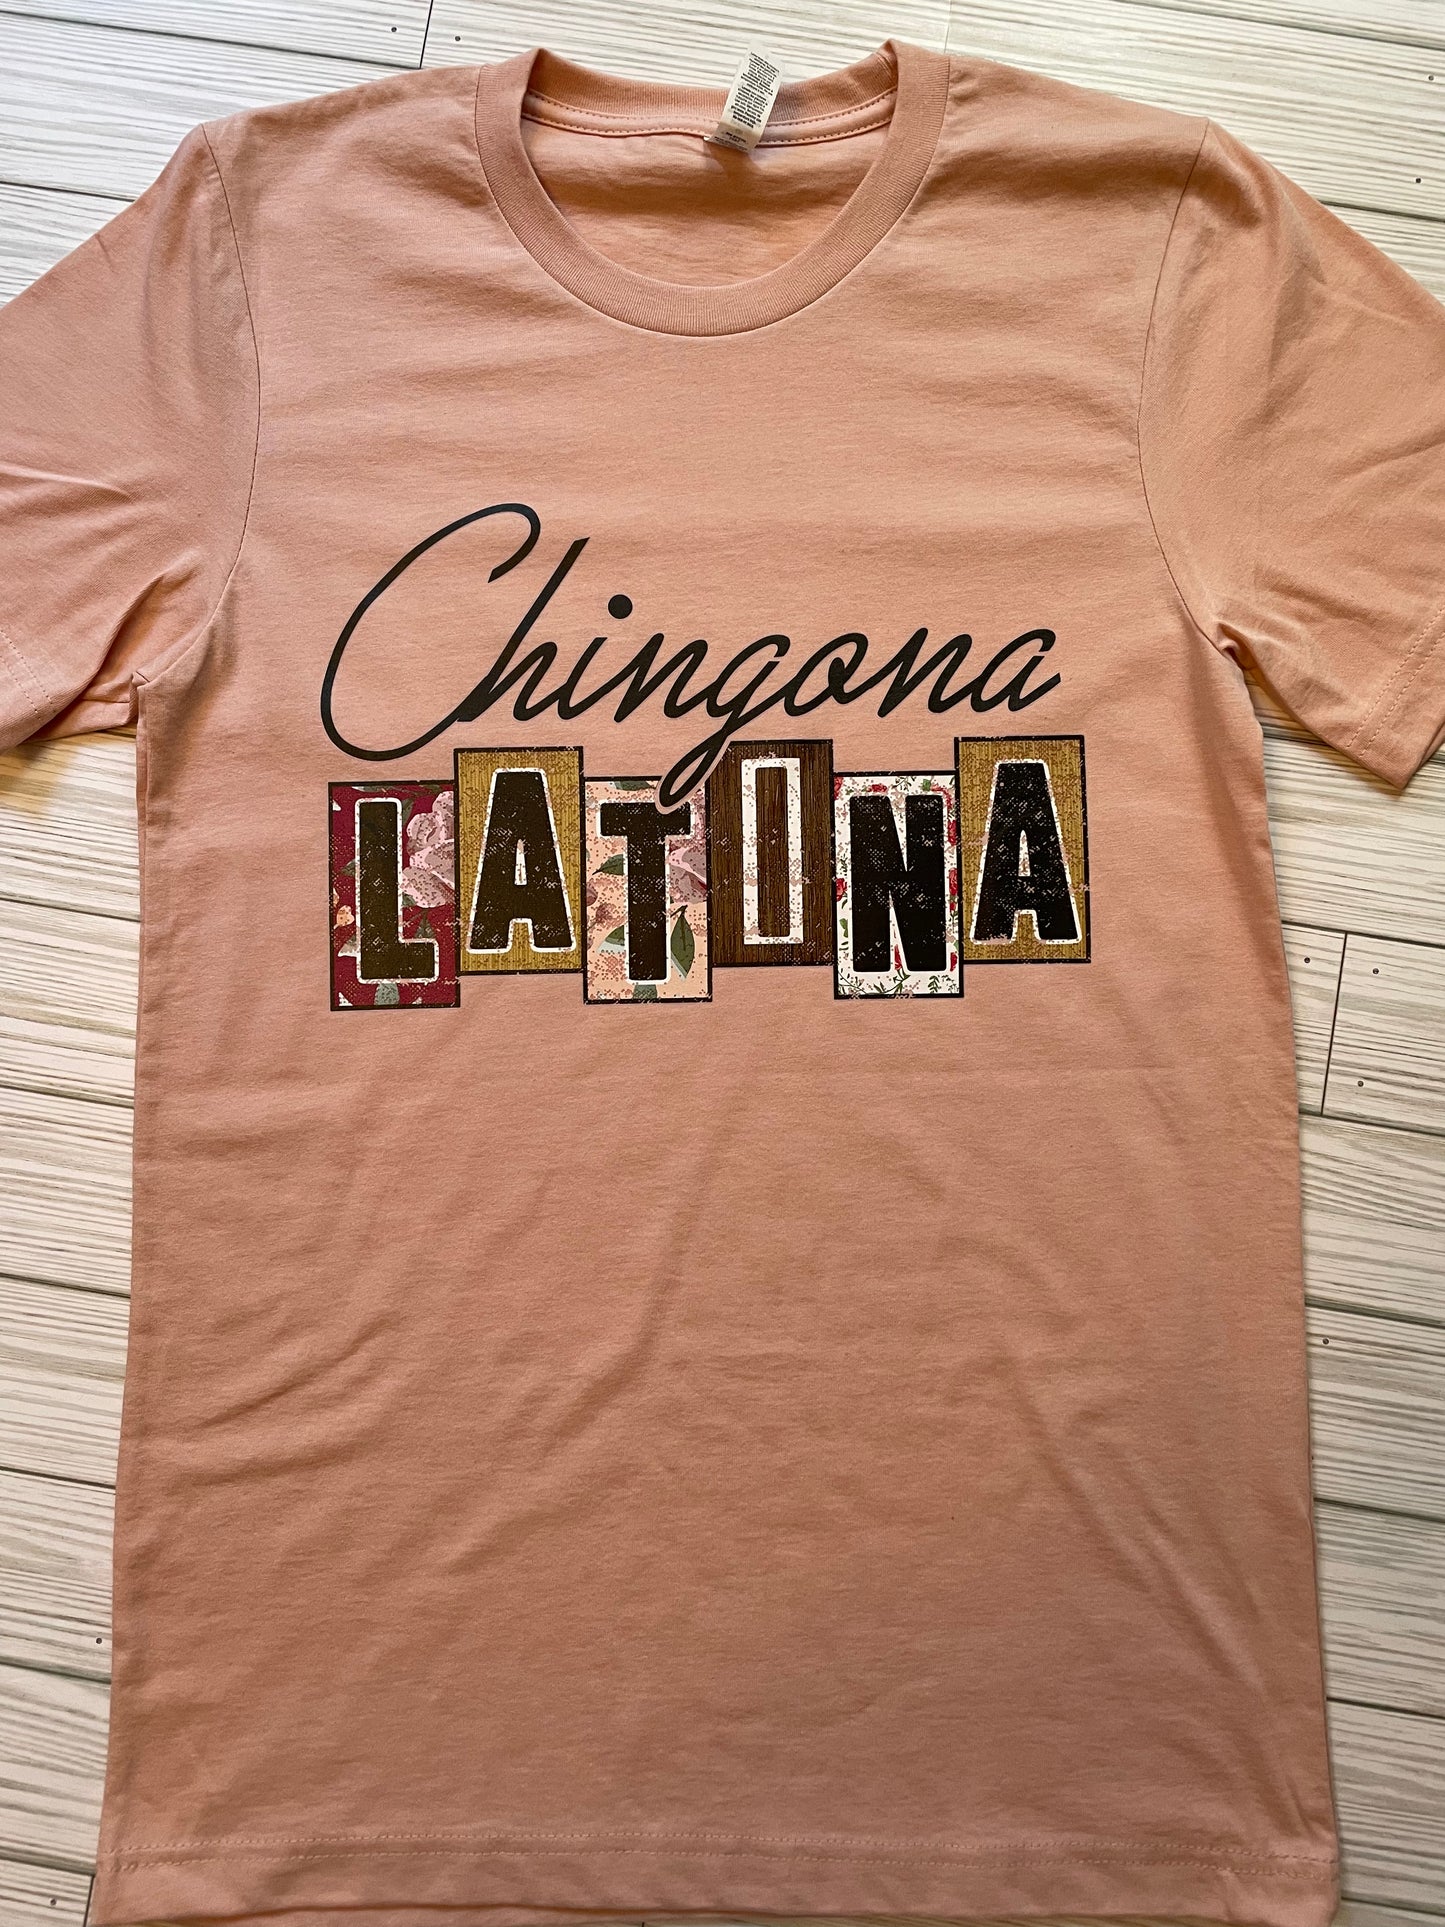 Chingona Latina